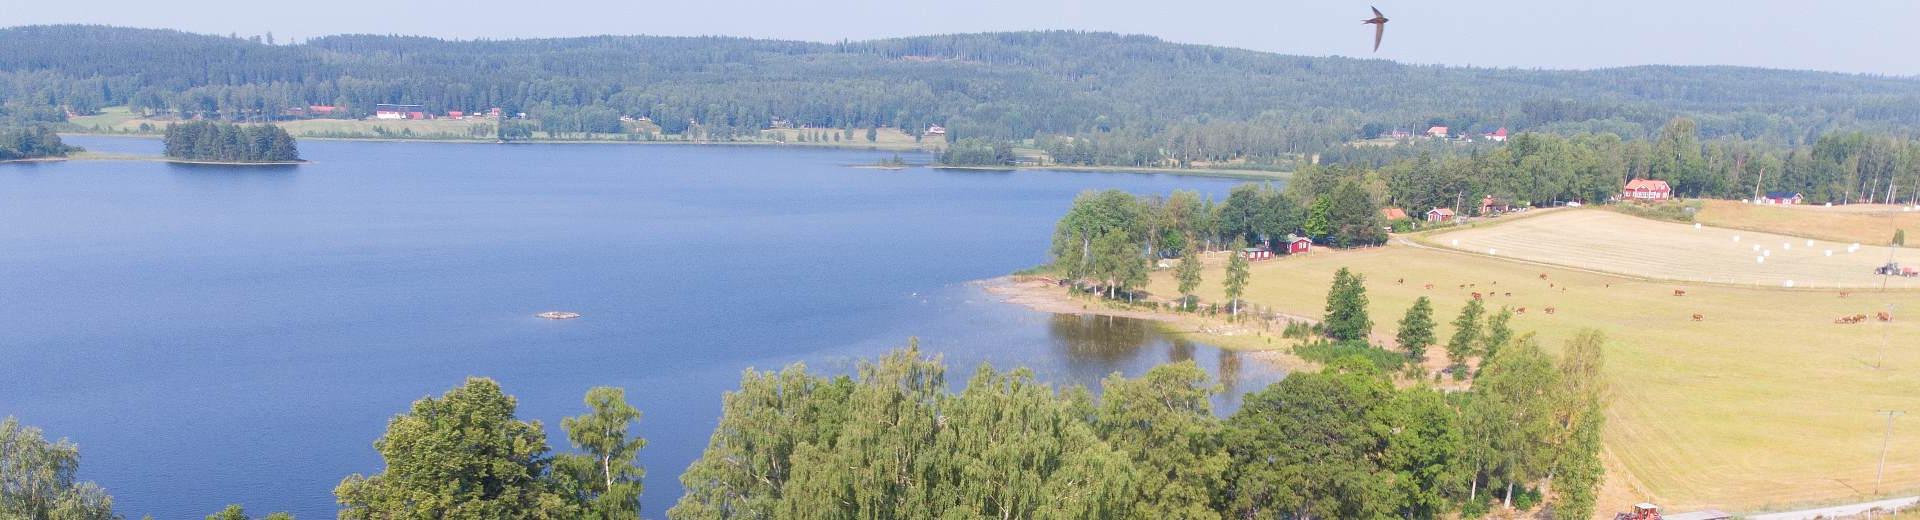 Case vacanza Svezia occidentale – Grandi spazi, tanta natura, paesaggi fantastici - Casamundo